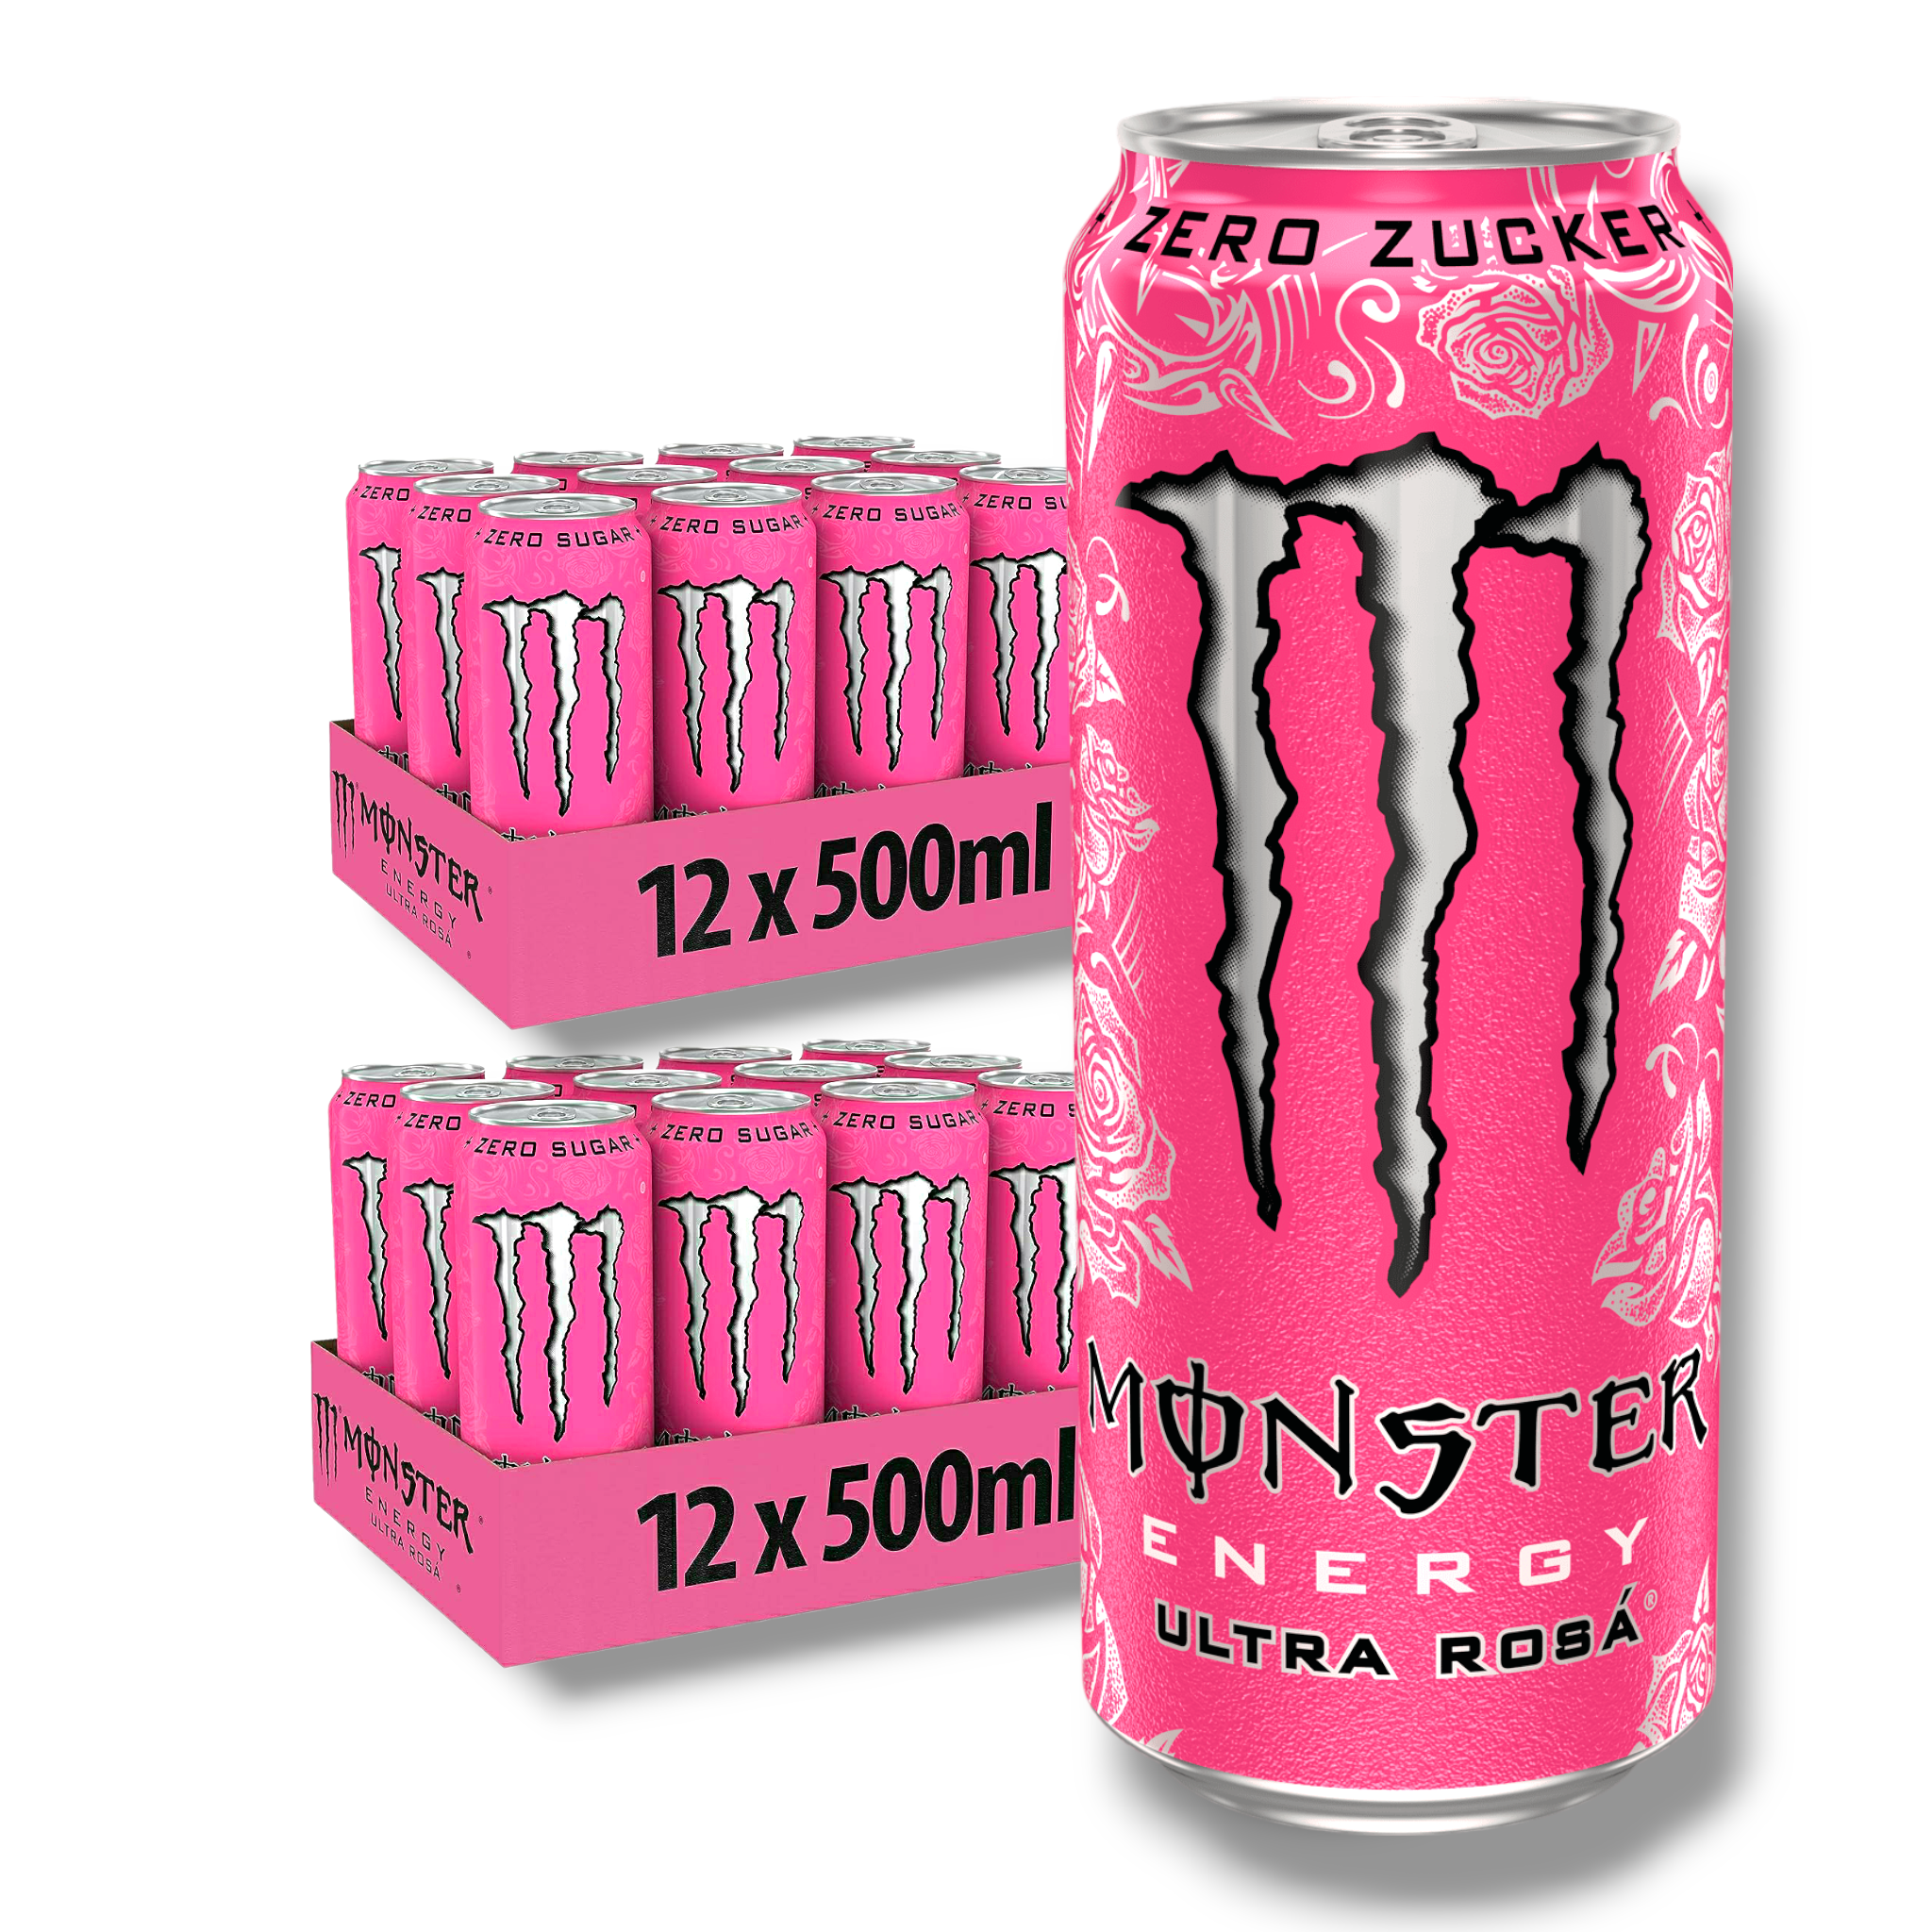 Monster Energy Ultra Rosa - koffeinhaltiger Energy Drink mit erfrischendem Grapefruit Geschmack - ohne Zucker und ohne Kalorien